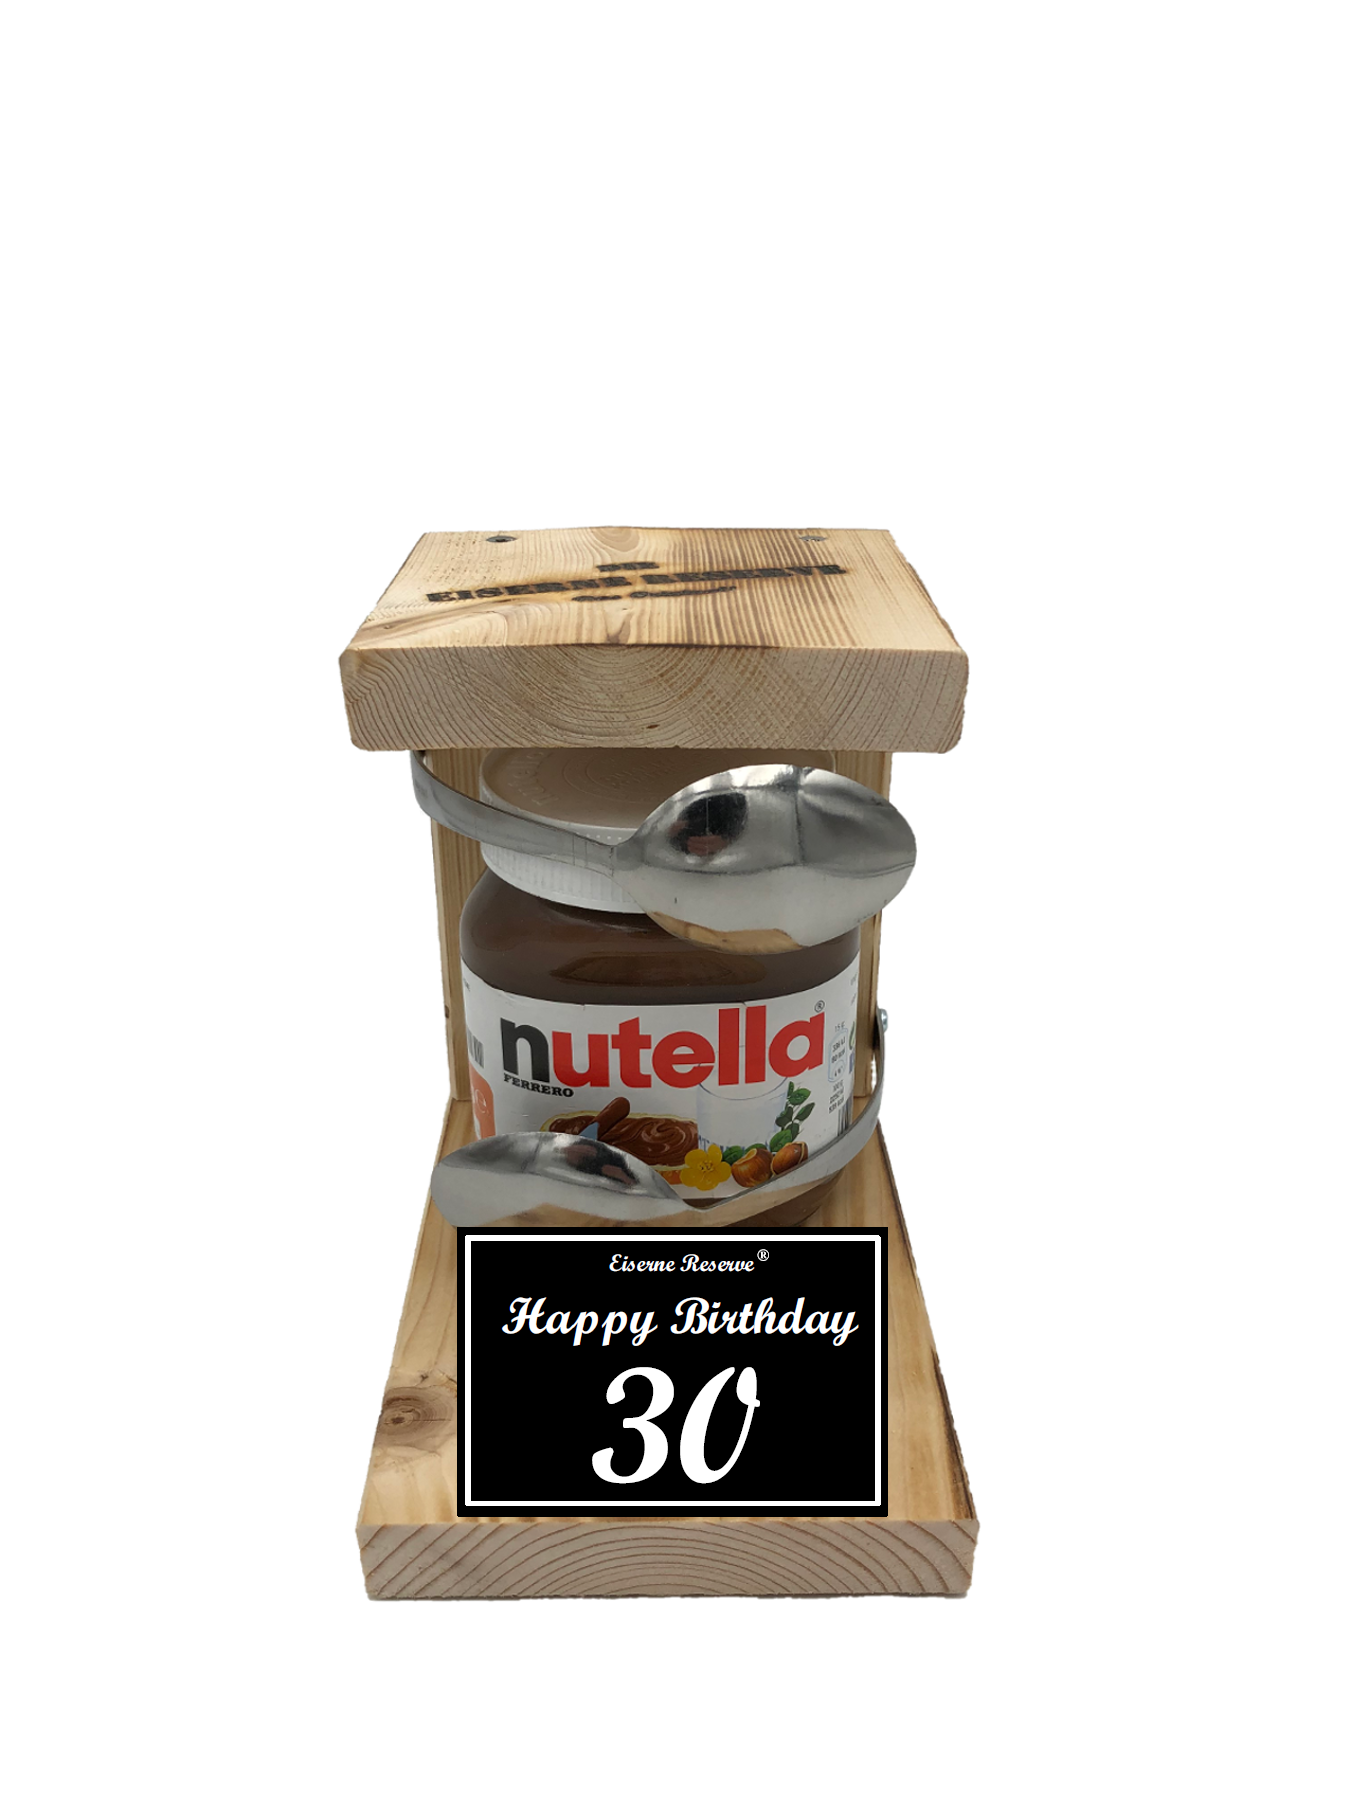 Geburtstag 30 - Eiserne Reserve Löffel Nutella - Geburtstag - Nutella Geschenk